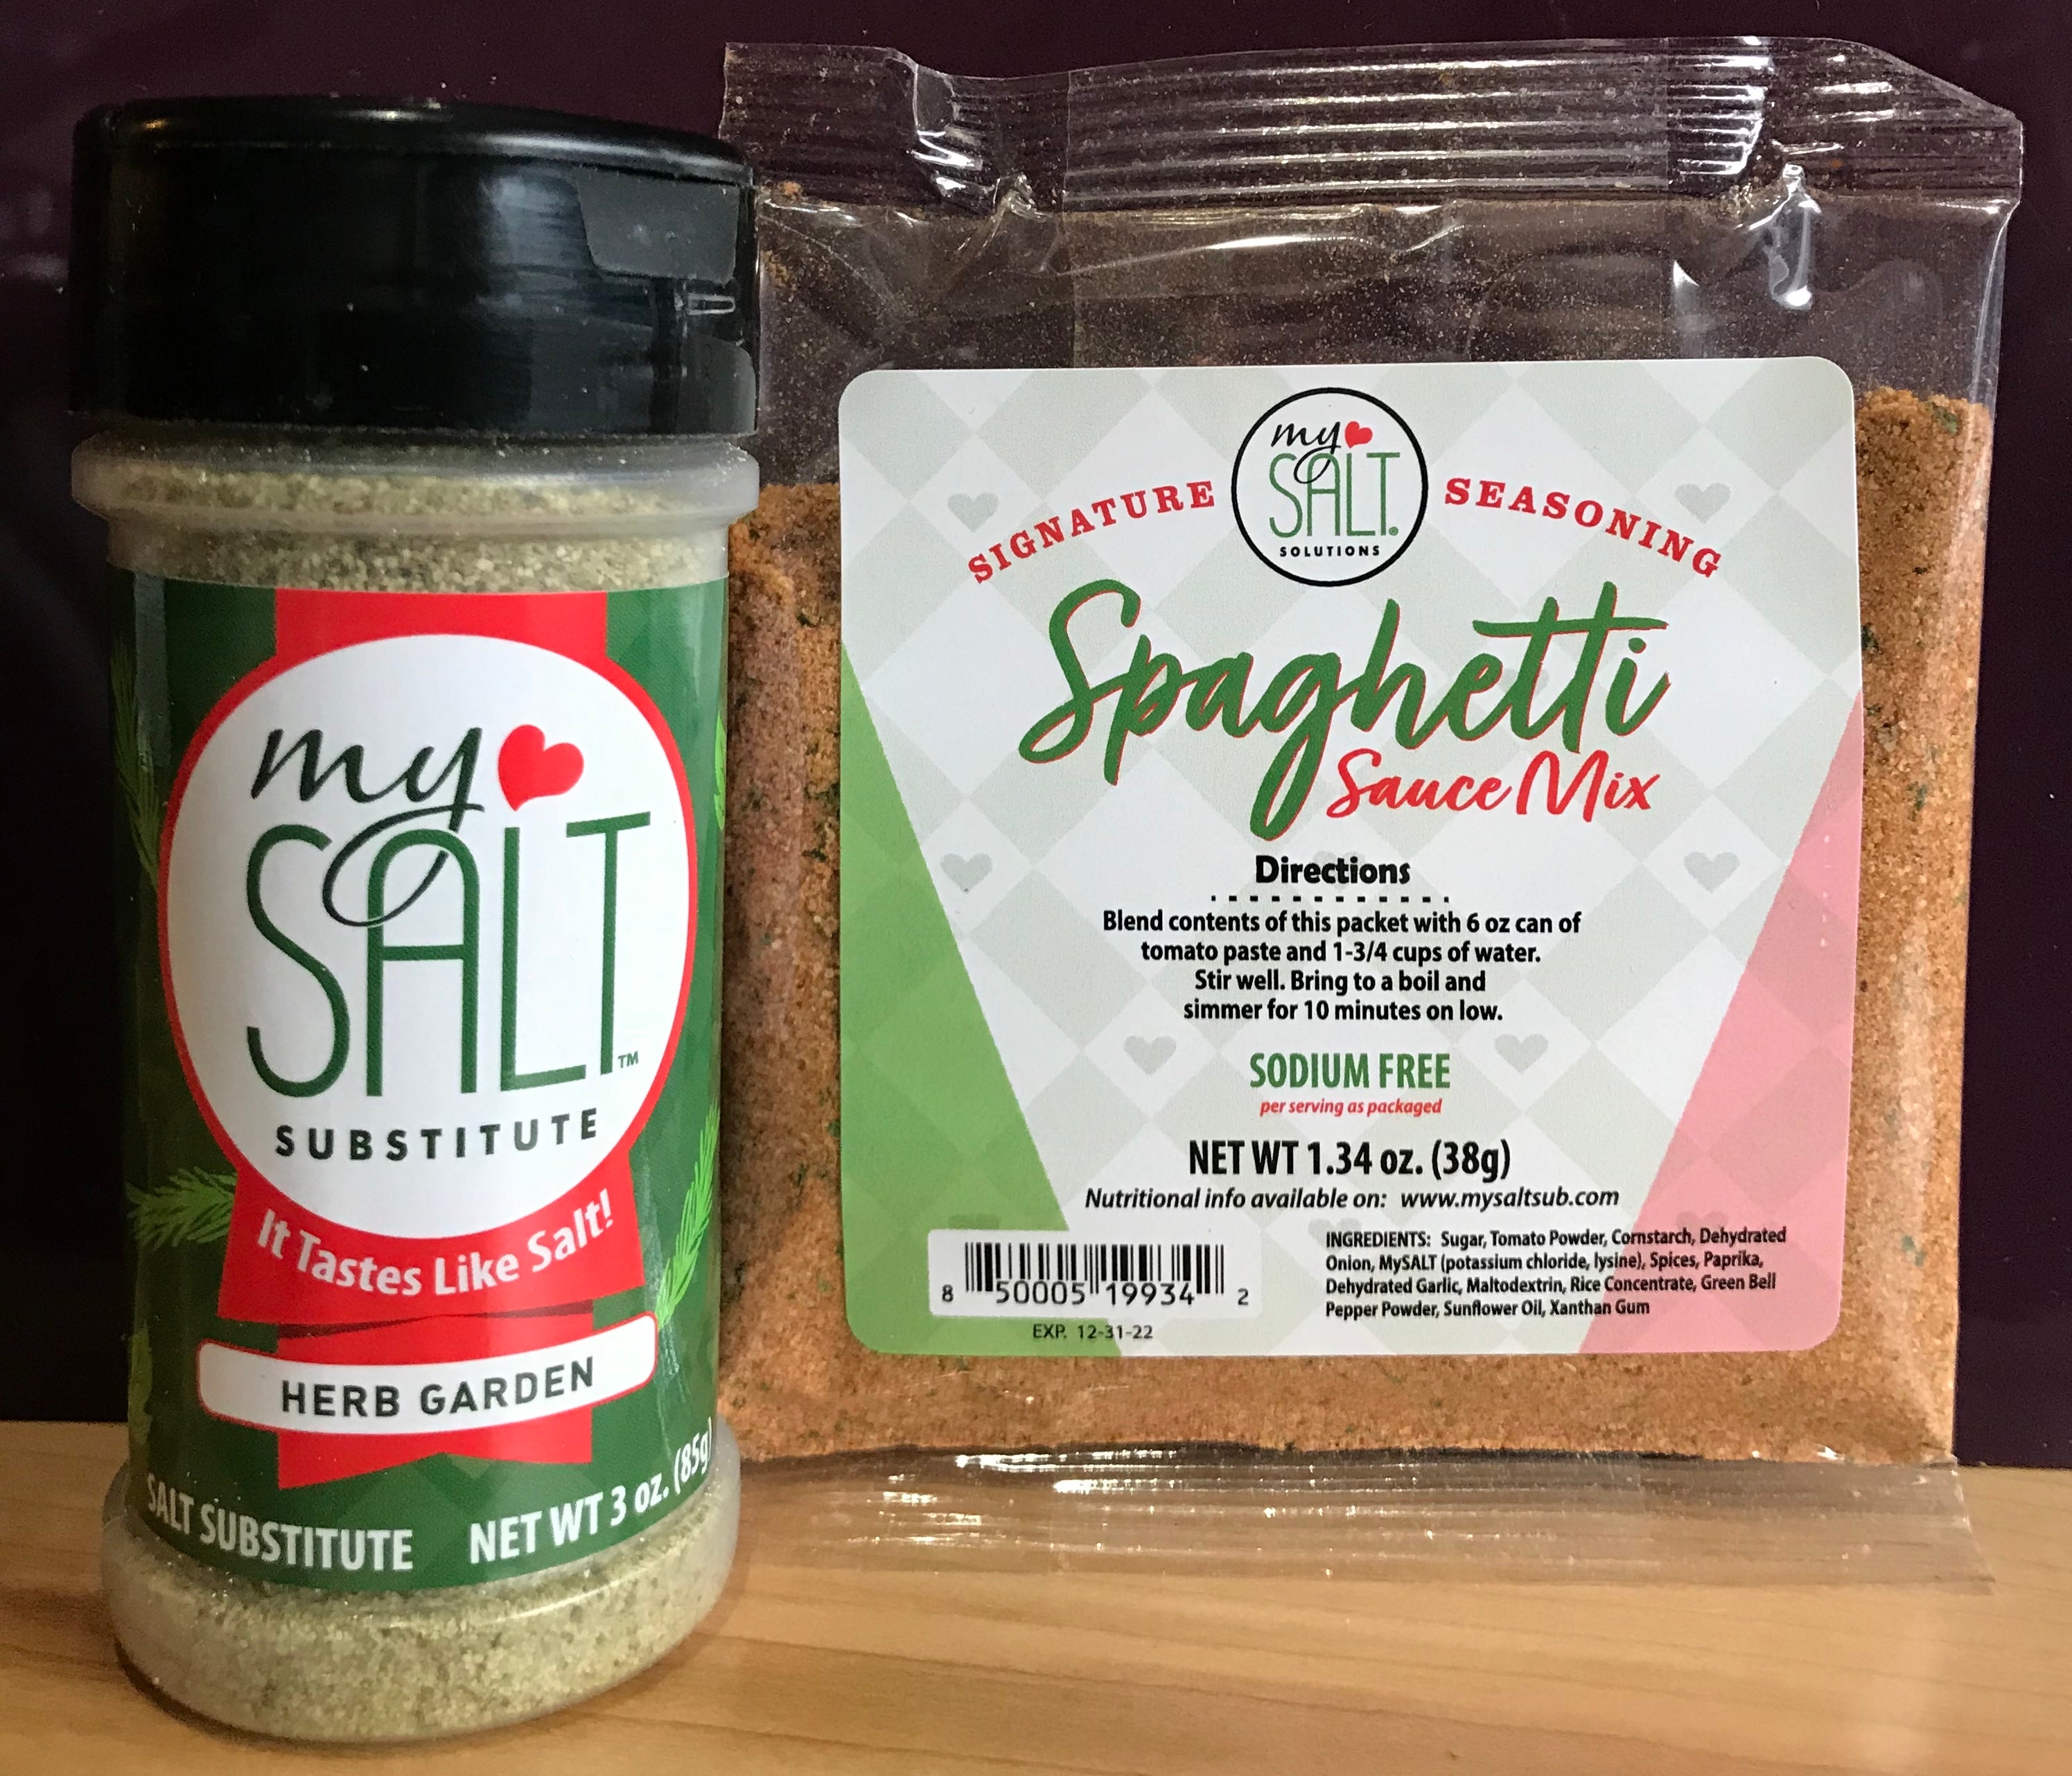 MySALT Onion Salt Substitute – My Salt Substitute